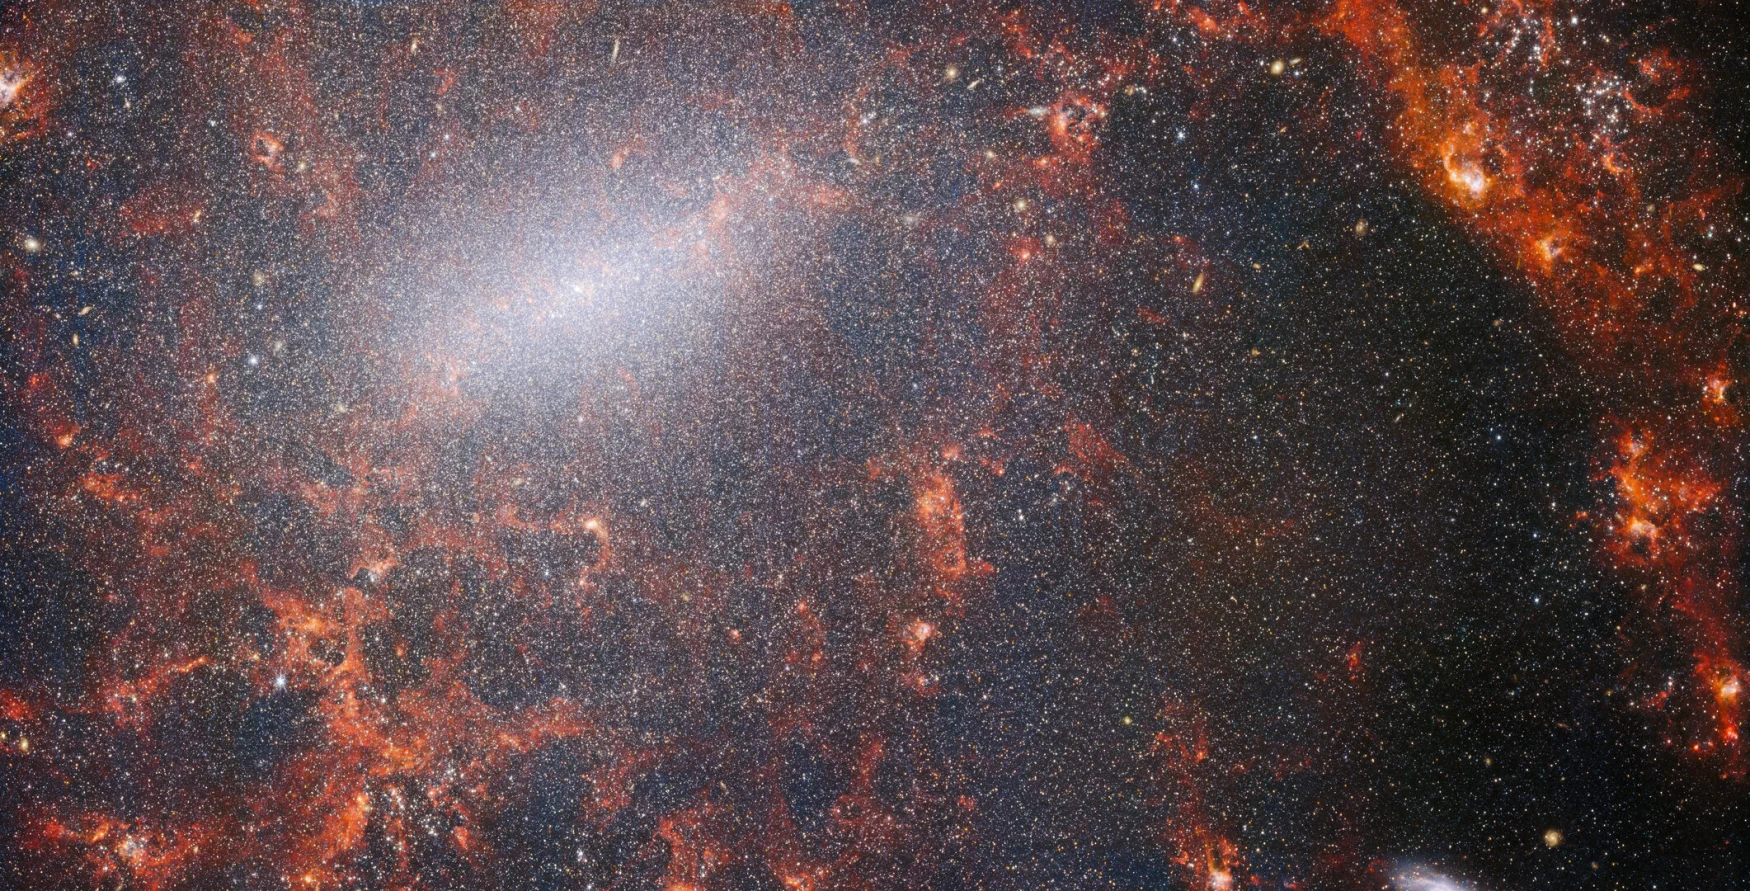 خيوط دقيقة من الغبار ومجموعات النجوم الساطعة عبر هذه الصورة من NASA / ESA / CSA James Webb Space Telescope.  هذا المنظر من أداة Webbâ € ™ s NIRCam مرصع بمجموعة ضخمة من النجوم في المجرة ، الأكثر كثافة على طول شريطها المركزي اللامع ، إلى جانب سحب حمراء مشتعلة من الغاز تضيئها النجوم الفتية بداخلها.  تنتمي هذه النجوم المتلألئة إلى المجرة الحلزونية المحظورة NGC 5068 ، والتي تقع على بعد حوالي 17 مليون سنة ضوئية من الأرض في كوكبة العذراء.  هذه الصورة لـ NGC 5068 هي جزء من حملة لإنشاء كنز فلكي دفين ، مستودع لرصد تشكل النجوم في المجرات القريبة.  يمكن رؤية الأحجار الكريمة السابقة من هذه المجموعة هنا وهنا.  هذه الملاحظات ذات قيمة خاصة لعلماء الفلك لسببين.  الأول هو أن تكوين النجوم يدعم العديد من المجالات في علم الفلك ، من فيزياء البلازما الضعيفة التي تقع بين النجوم إلى تطور المجرات بأكملها.  من خلال مراقبة تكوين النجوم في المجرات القريبة ، يأمل علماء الفلك في بدء تقدم علمي كبير مع بعض البيانات الأولى المتاحة من ويب.  السبب الثاني هو أن أرصاد ويب تستند إلى دراسات أخرى باستخدام التلسكوبات بما في ذلك تلسكوب هابل الفضائي التابع لناسا / وكالة الفضاء الأوروبية وبعض المراصد الأرضية الأكثر قدرة في العالم.  جمع ويب صورًا لـ 19 مجرة ​​قريبة من مجرات تشكل النجوم ، والتي تمكن علماء الفلك بعد ذلك من دمجها مع كتالوجات من هابل المكونة من 10000 مجموعة نجمية ، ورسم خرائط طيفية لـ 20000 سديم انبعاث نجمي من التلسكوب الكبير جدًا (VLT) ، ورصد 12000 من السدم المظلمة. ، السحب الجزيئية الكثيفة التي تم تحديدها بواسطة مصفوفة أتاكاما الكبيرة المليمترية / ما دون المليمتر (ALMA).  تغطي هذه الملاحظات الطيف الكهرومغناطيسي وتمنح علماء الفلك فرصة غير مسبوقة لتجميع تفاصيل تكوين النجوم معًا.  تمتلئ هذه الصورة القريبة من الأشعة تحت الحمراء للمجرة بالتجمع الهائل للنجوم القديمة التي تشكل جوهر NGC 5068. تسمح الرؤية الحادة لـ NIRCam للفلكيين بالتحديق عبر غاز وغبار المجرة لفحص نجومها عن كثب.  توجد سحب كثيفة ومشرقة من الغبار على طول مسار الأذرع الحلزونية: هذه هي مناطق H II ، وهي مجموعات من غاز الهيدروجين حيث تتشكل نجوم جديدة.  تقوم النجوم النشيطة والحيوية بتأين الهيدروجين من حولها ، والذي ، عندما يقترن بانبعاثات الغبار الساخن ، ينتج هذا التوهج المحمر.  تشكل مناطق H II هدفًا رائعًا لعلماء الفلك ، وأدوات Webb هي الأدوات المثالية لفحصها ، مما ينتج عنه هذه الصورة. [Image Description: A close-in image of a spiral galaxy, showing its core and part of a spiral arm. At this distance thousands upon thousands of tiny stars that make up the galaxy can be seen. The stars are most dense in a whitish bar that forms the core, and less dense out from that towards the arm. Bright red gas clouds follow the twist of the galaxy and the spiral arm.] Links NGC 5068 (NIRCam + MIRI Image) NGC 5068 (MIRI Image) أداة المنزلق (صور MIRI و NIRCam) فيديو: Pan of NGC 5068 Video: مناظر Webb لـ NGC 5068 (صور MIRI و NIRCam) الفيديو: تكبير إلى NGC 5068 